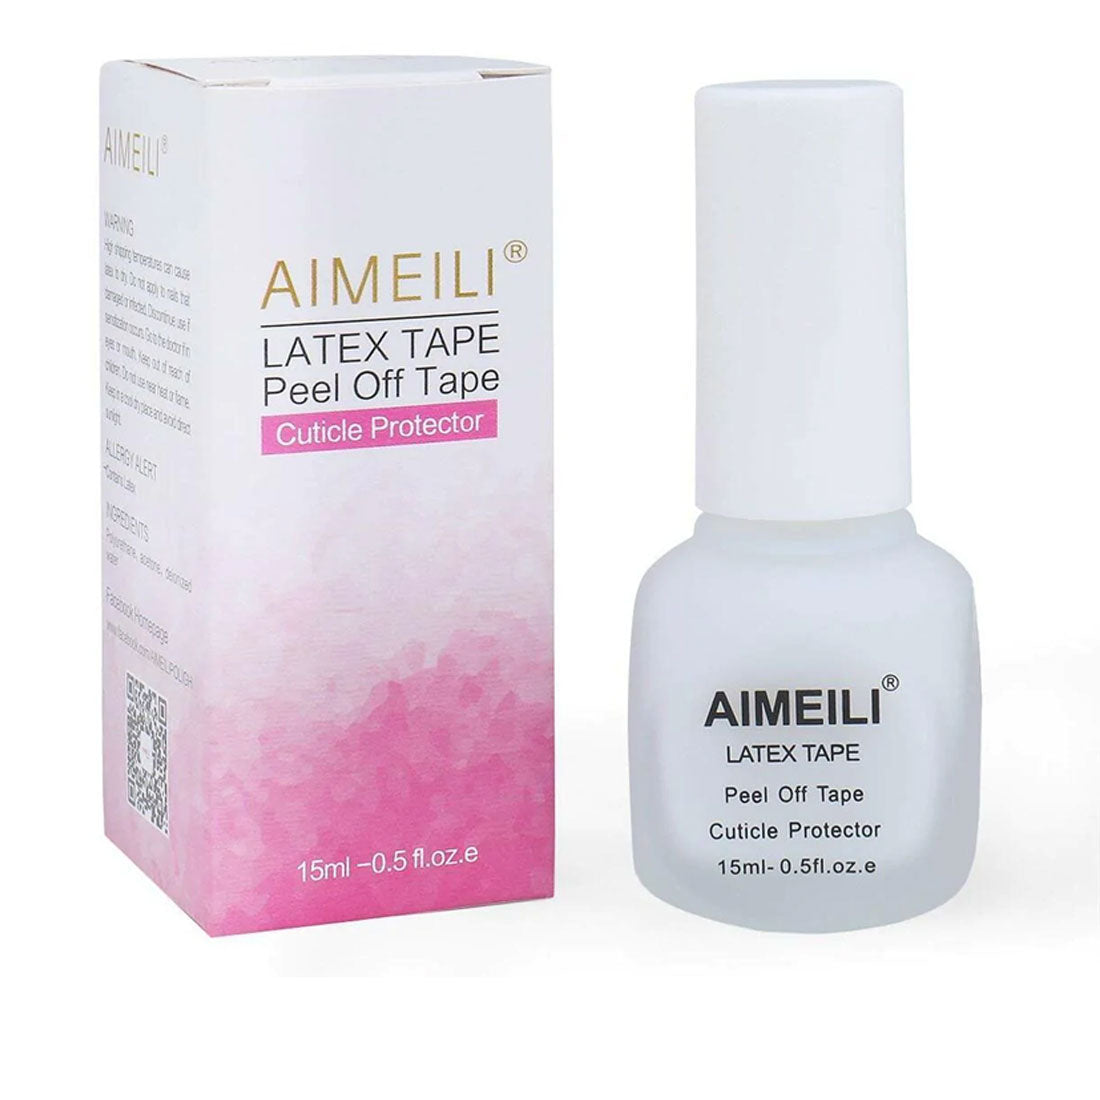 AIMEILI Latex Tape – Peel Off Tape Cuticle Protector